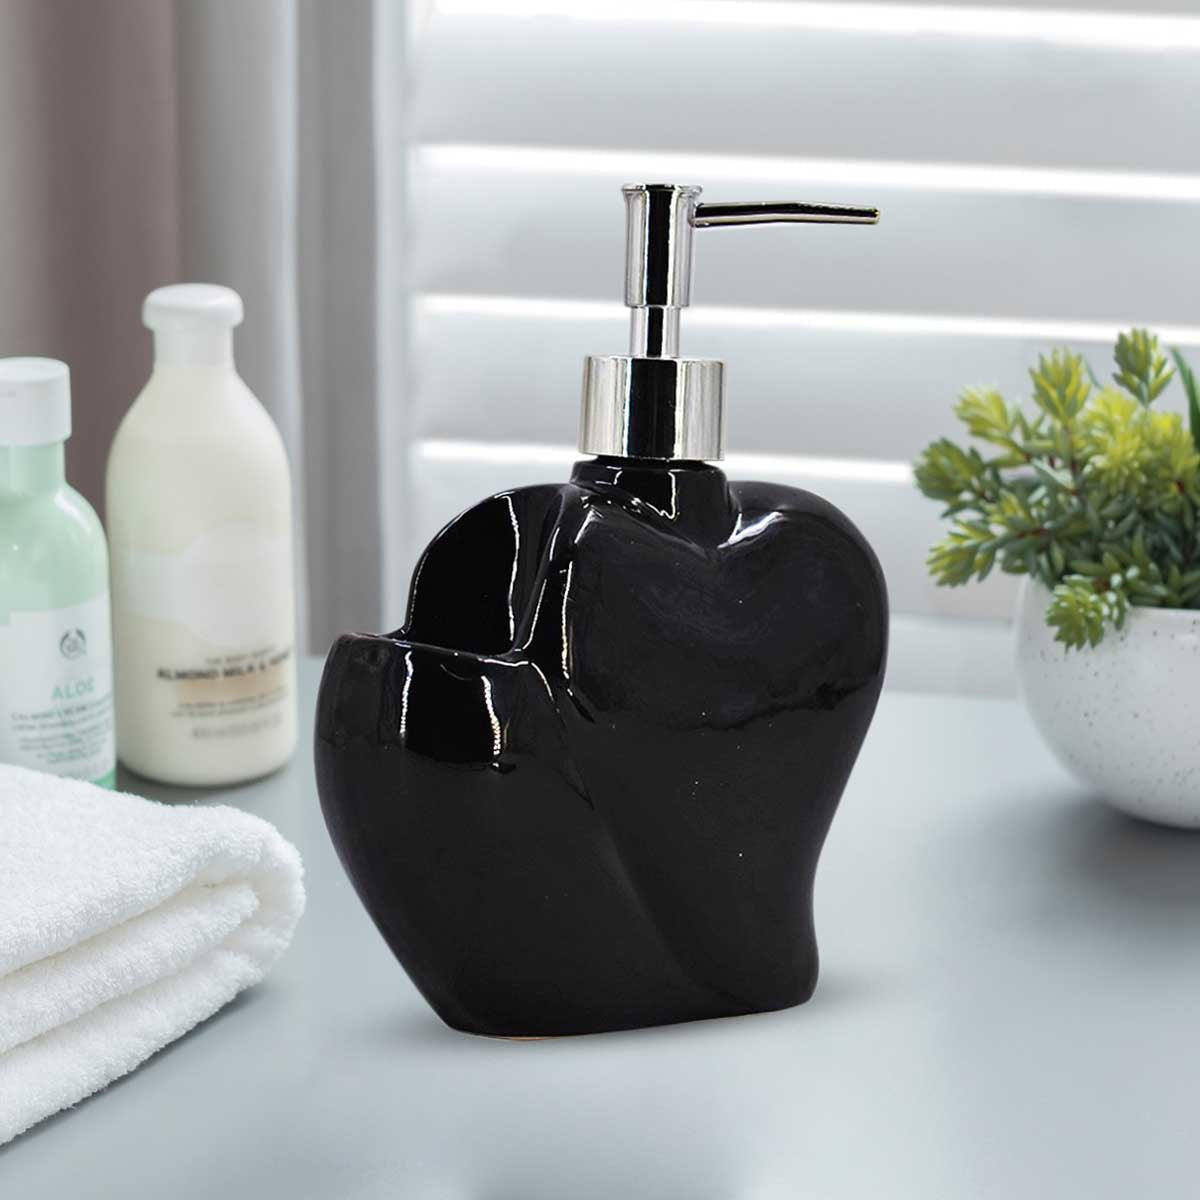 Kookee Ceramic Soap Dispenser for Bathroom handwash, refillable pump bottle for Kitchen hand wash basin, Set of 1, Black (8028)